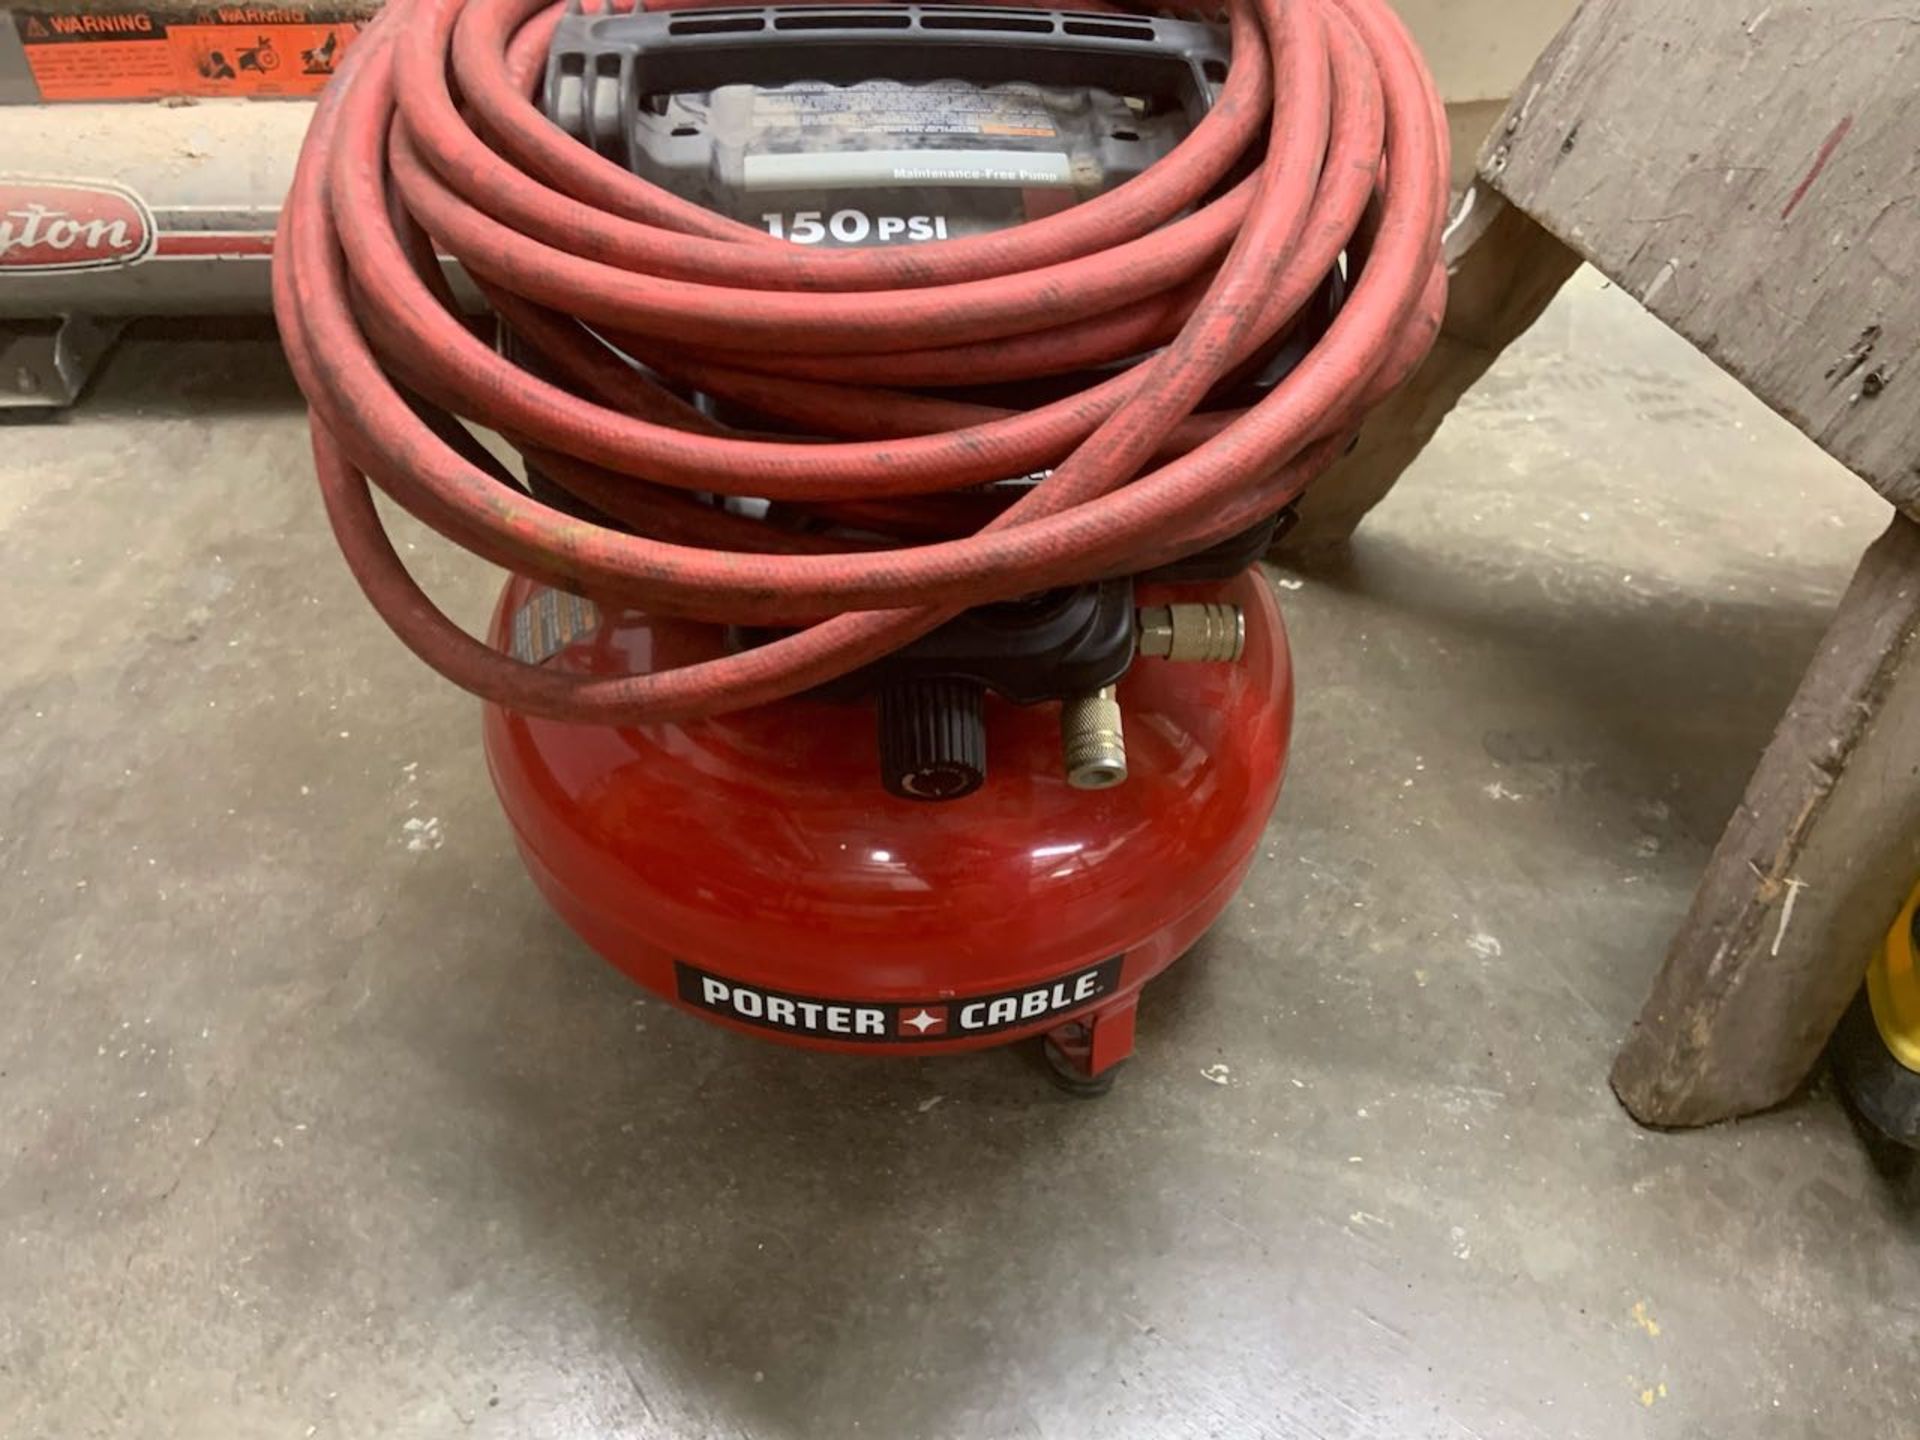 Porter Cable air compressor pancake